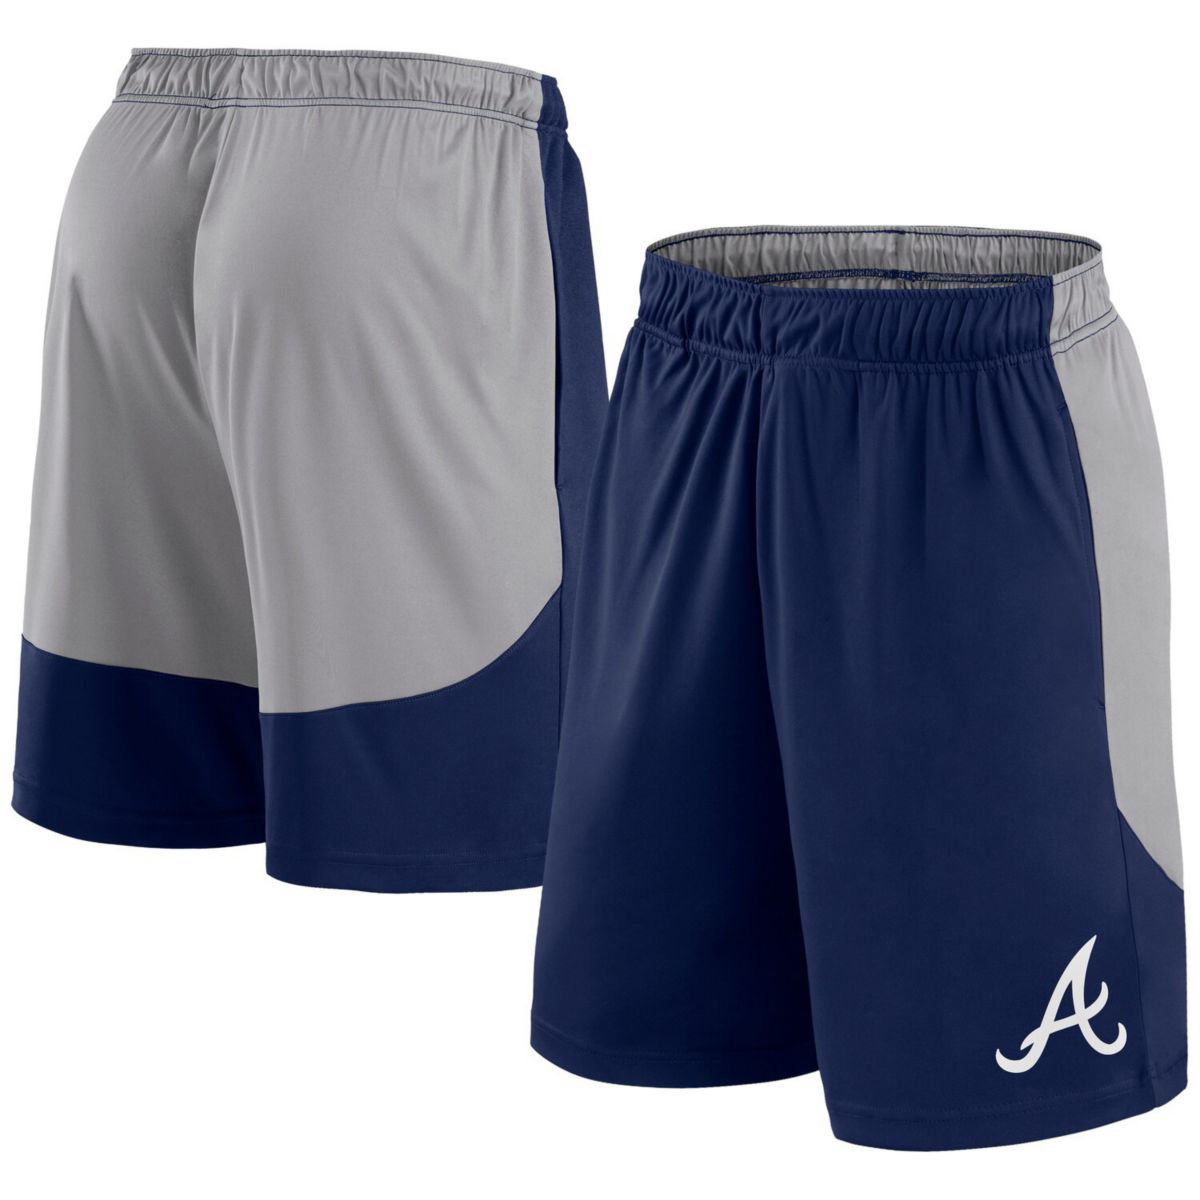 Men's Fanatics Navy/Gray Atlanta Braves Go Hard Shorts Fanatics Brands - White Label